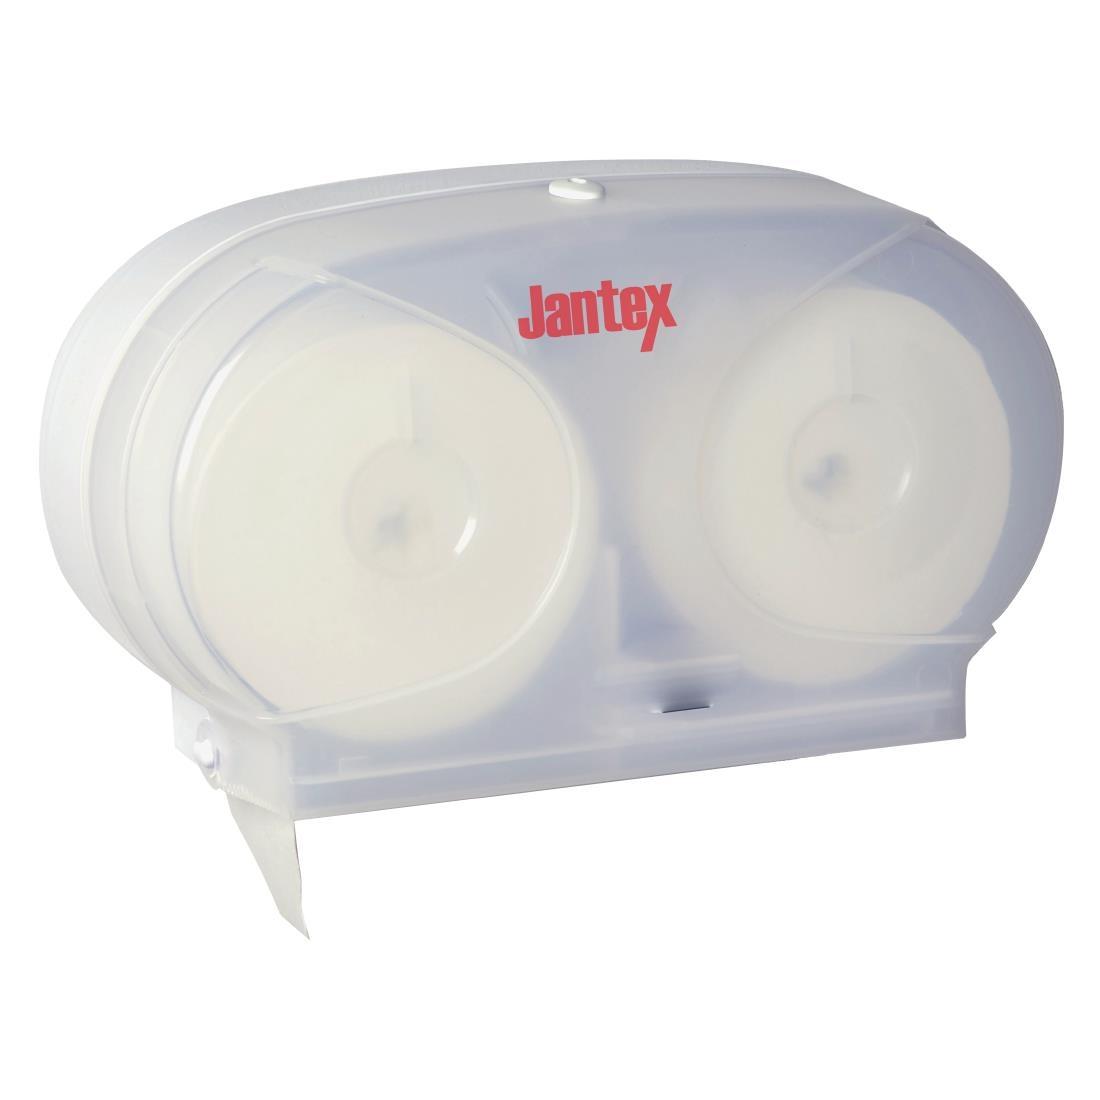 Jantex Toilet Roll Dispenser - GL060  - 1